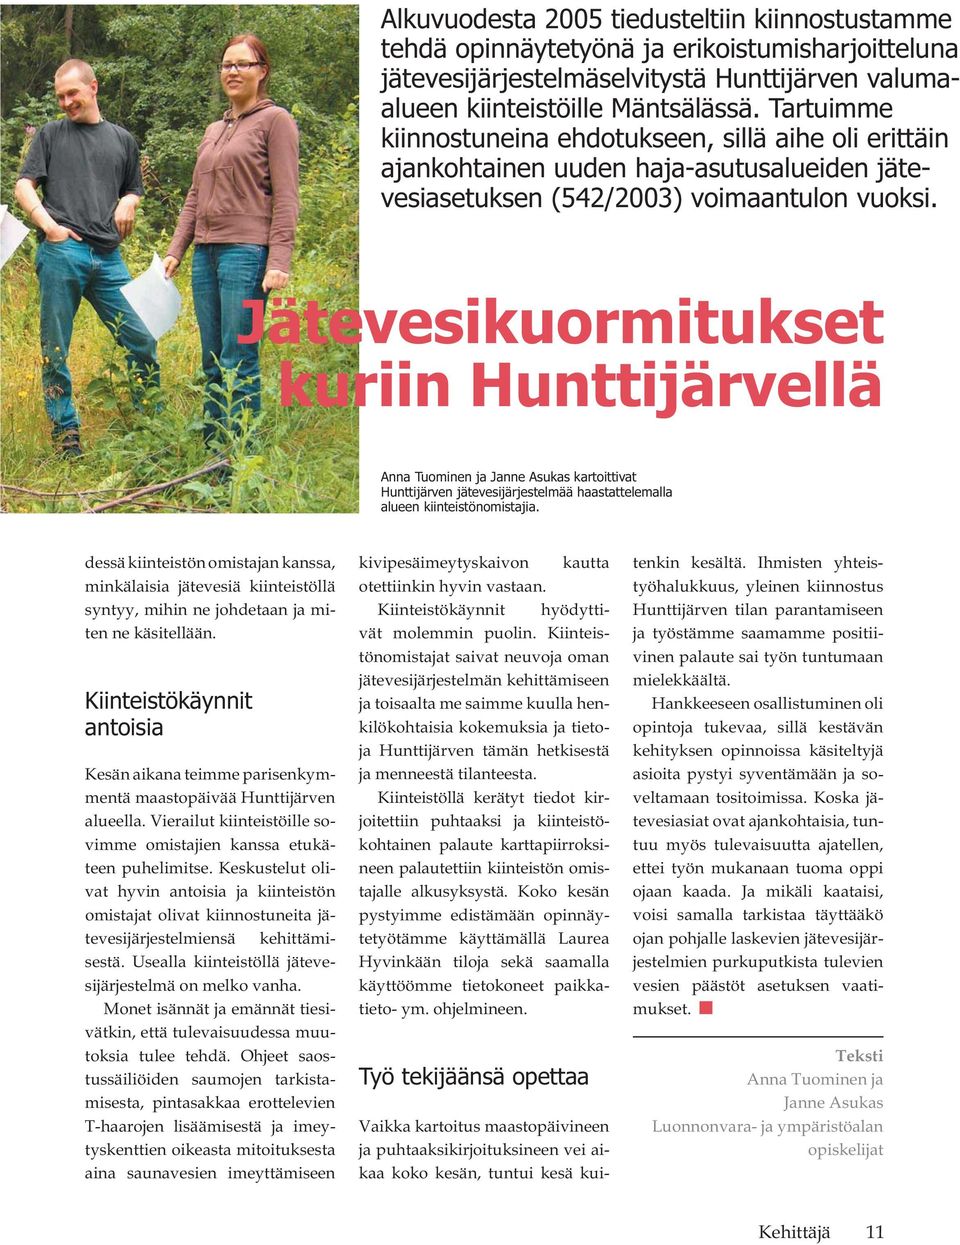 Jätevesikuormitukset kuriin Hunttijärvellä Anna Tuominen ja Janne Asukas kartoittivat Hunttijärven jätevesijärjestelmää haastattelemalla alueen kiinteistönomistajia.